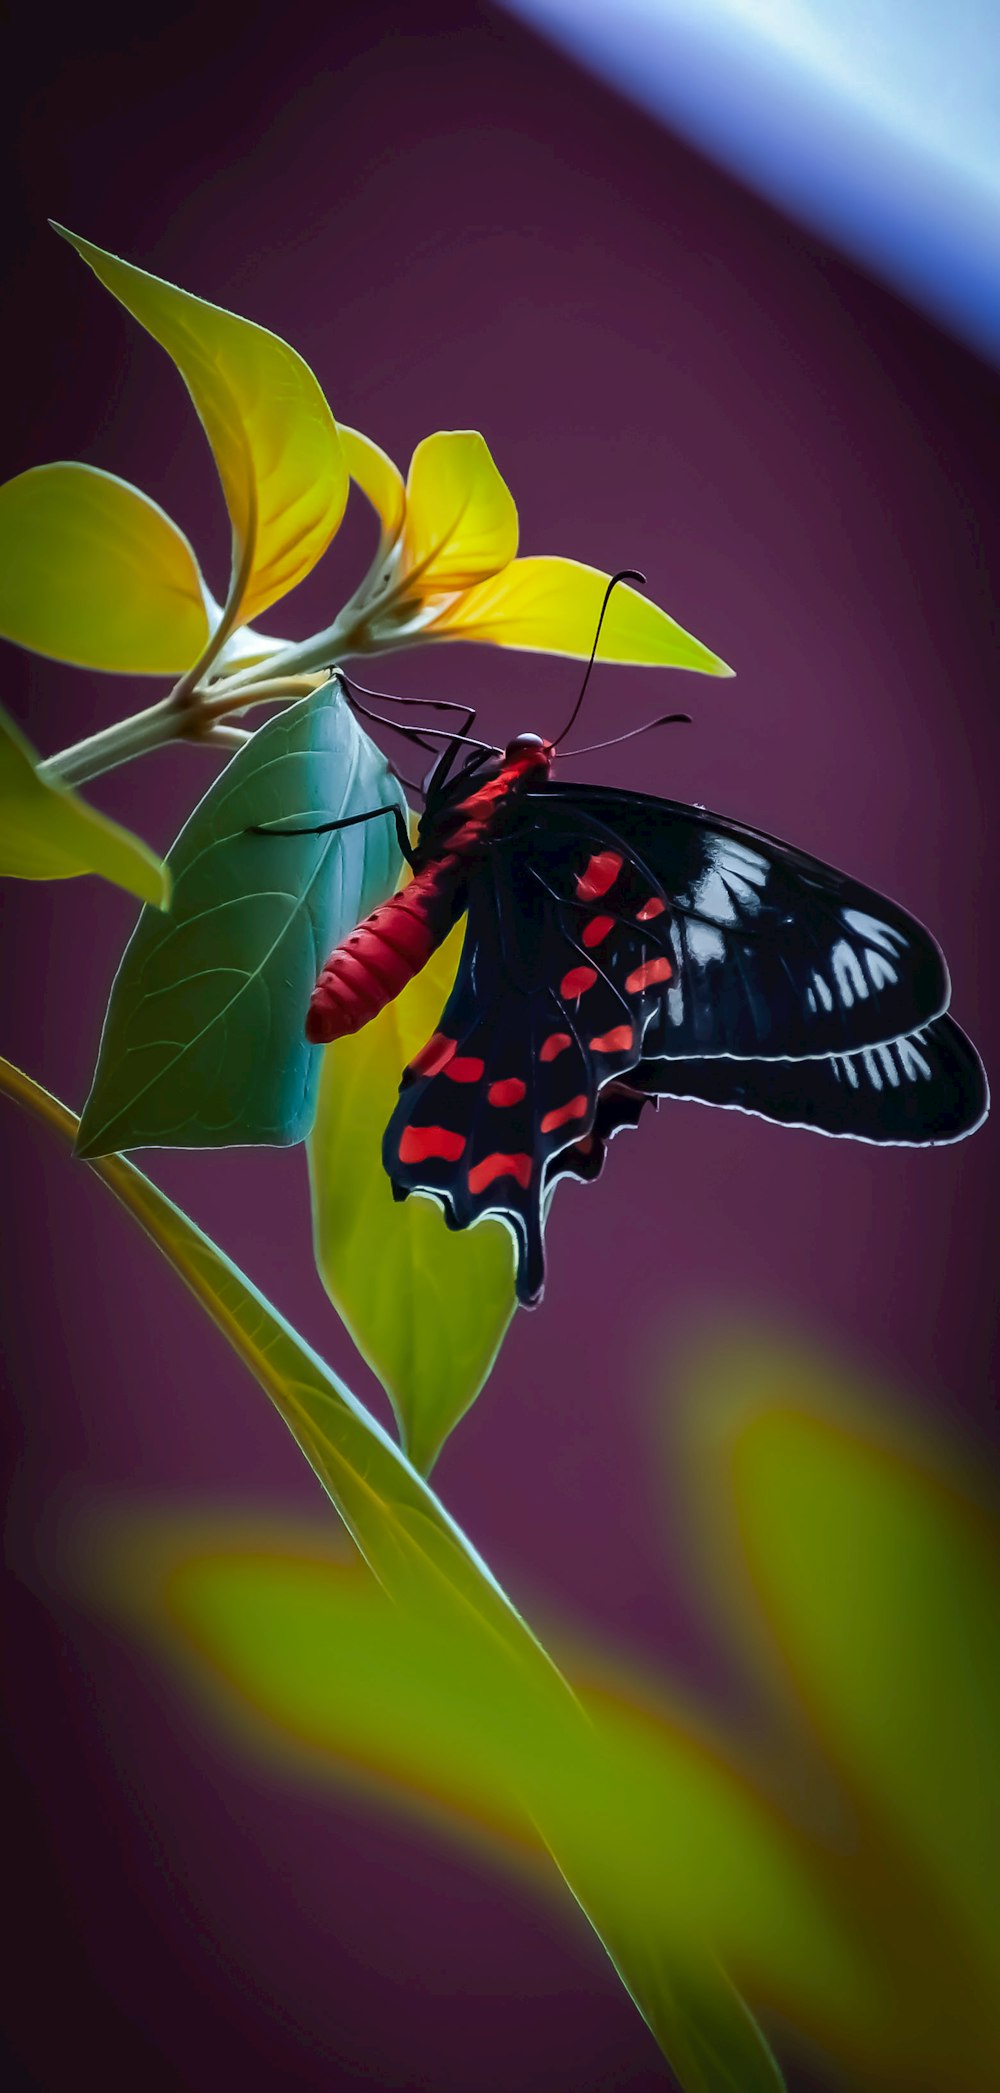 mariposa negra, blanca y roja posada en flor amarilla